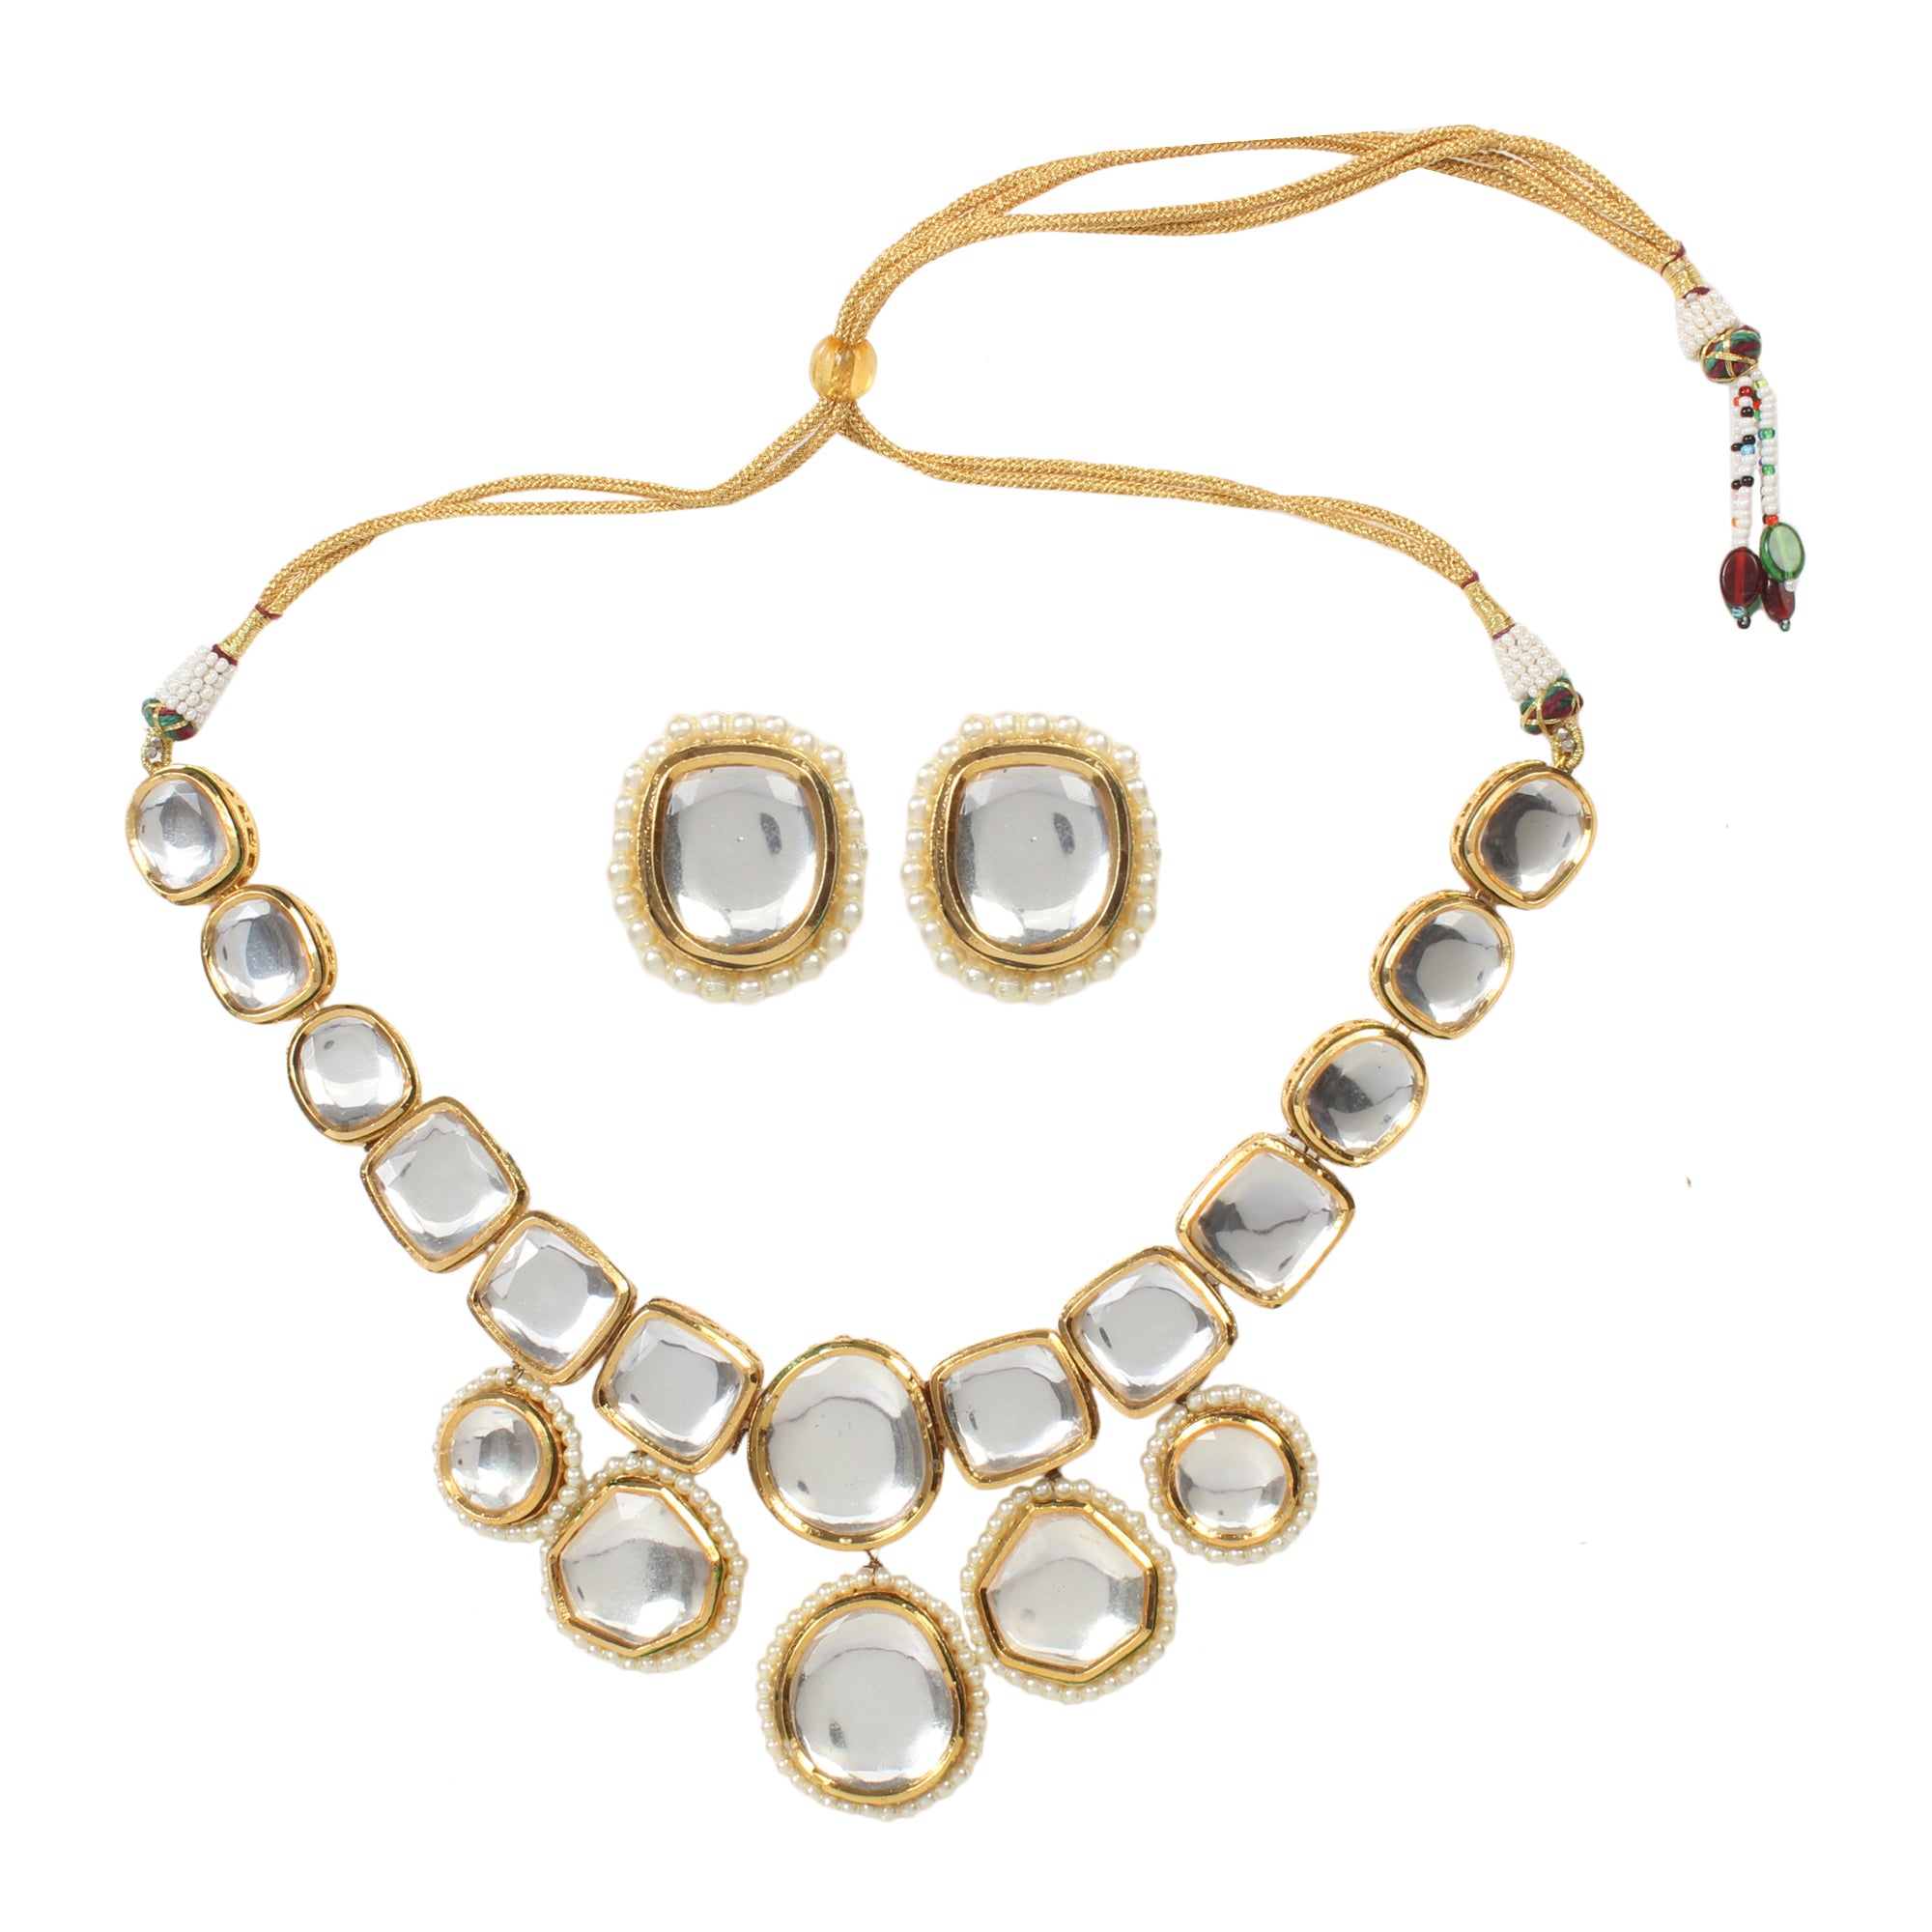 Women's Kundan Inspired Necklace with earrings - Femizen